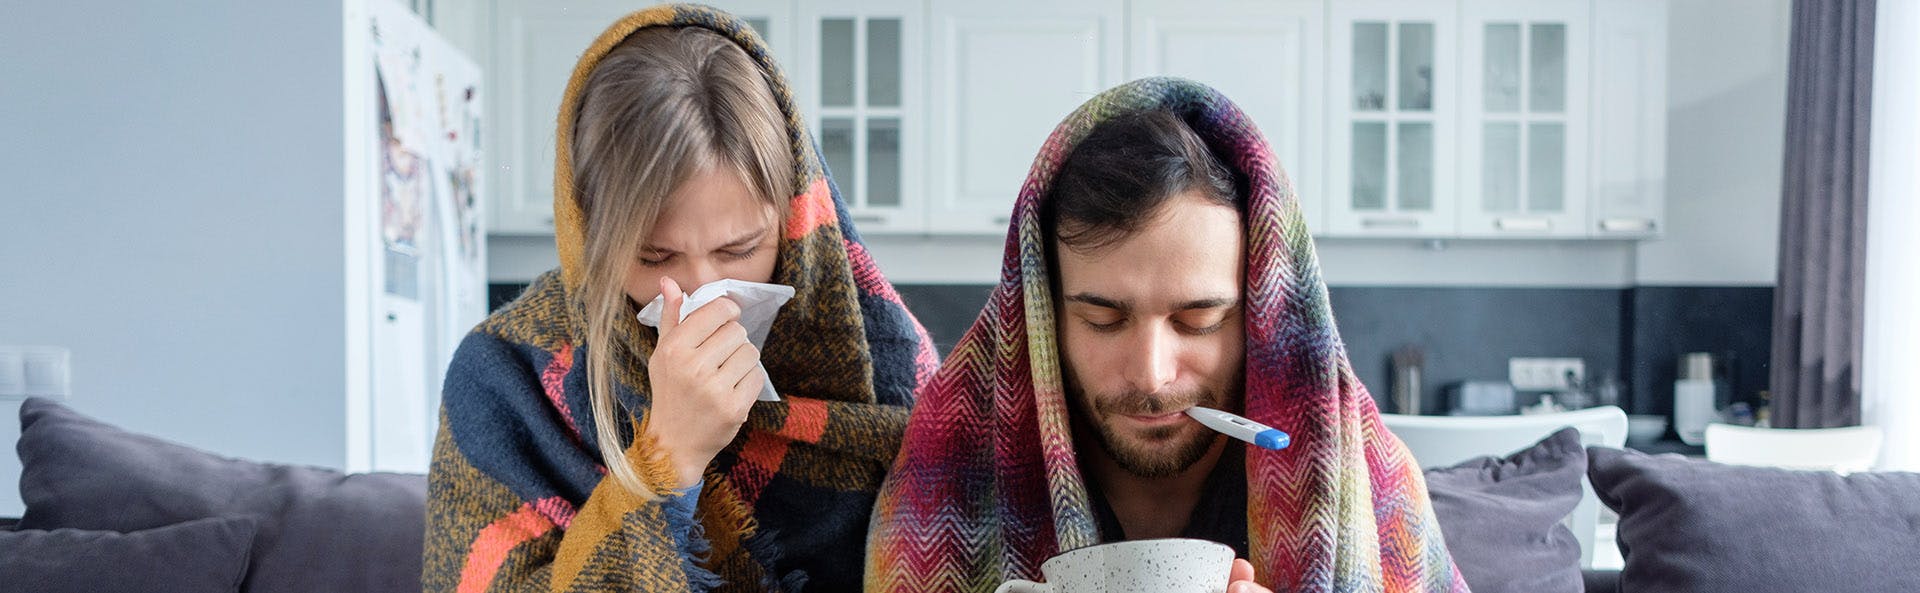 Pareja con síntomas de resfrío como congestión nasal y fiebre.